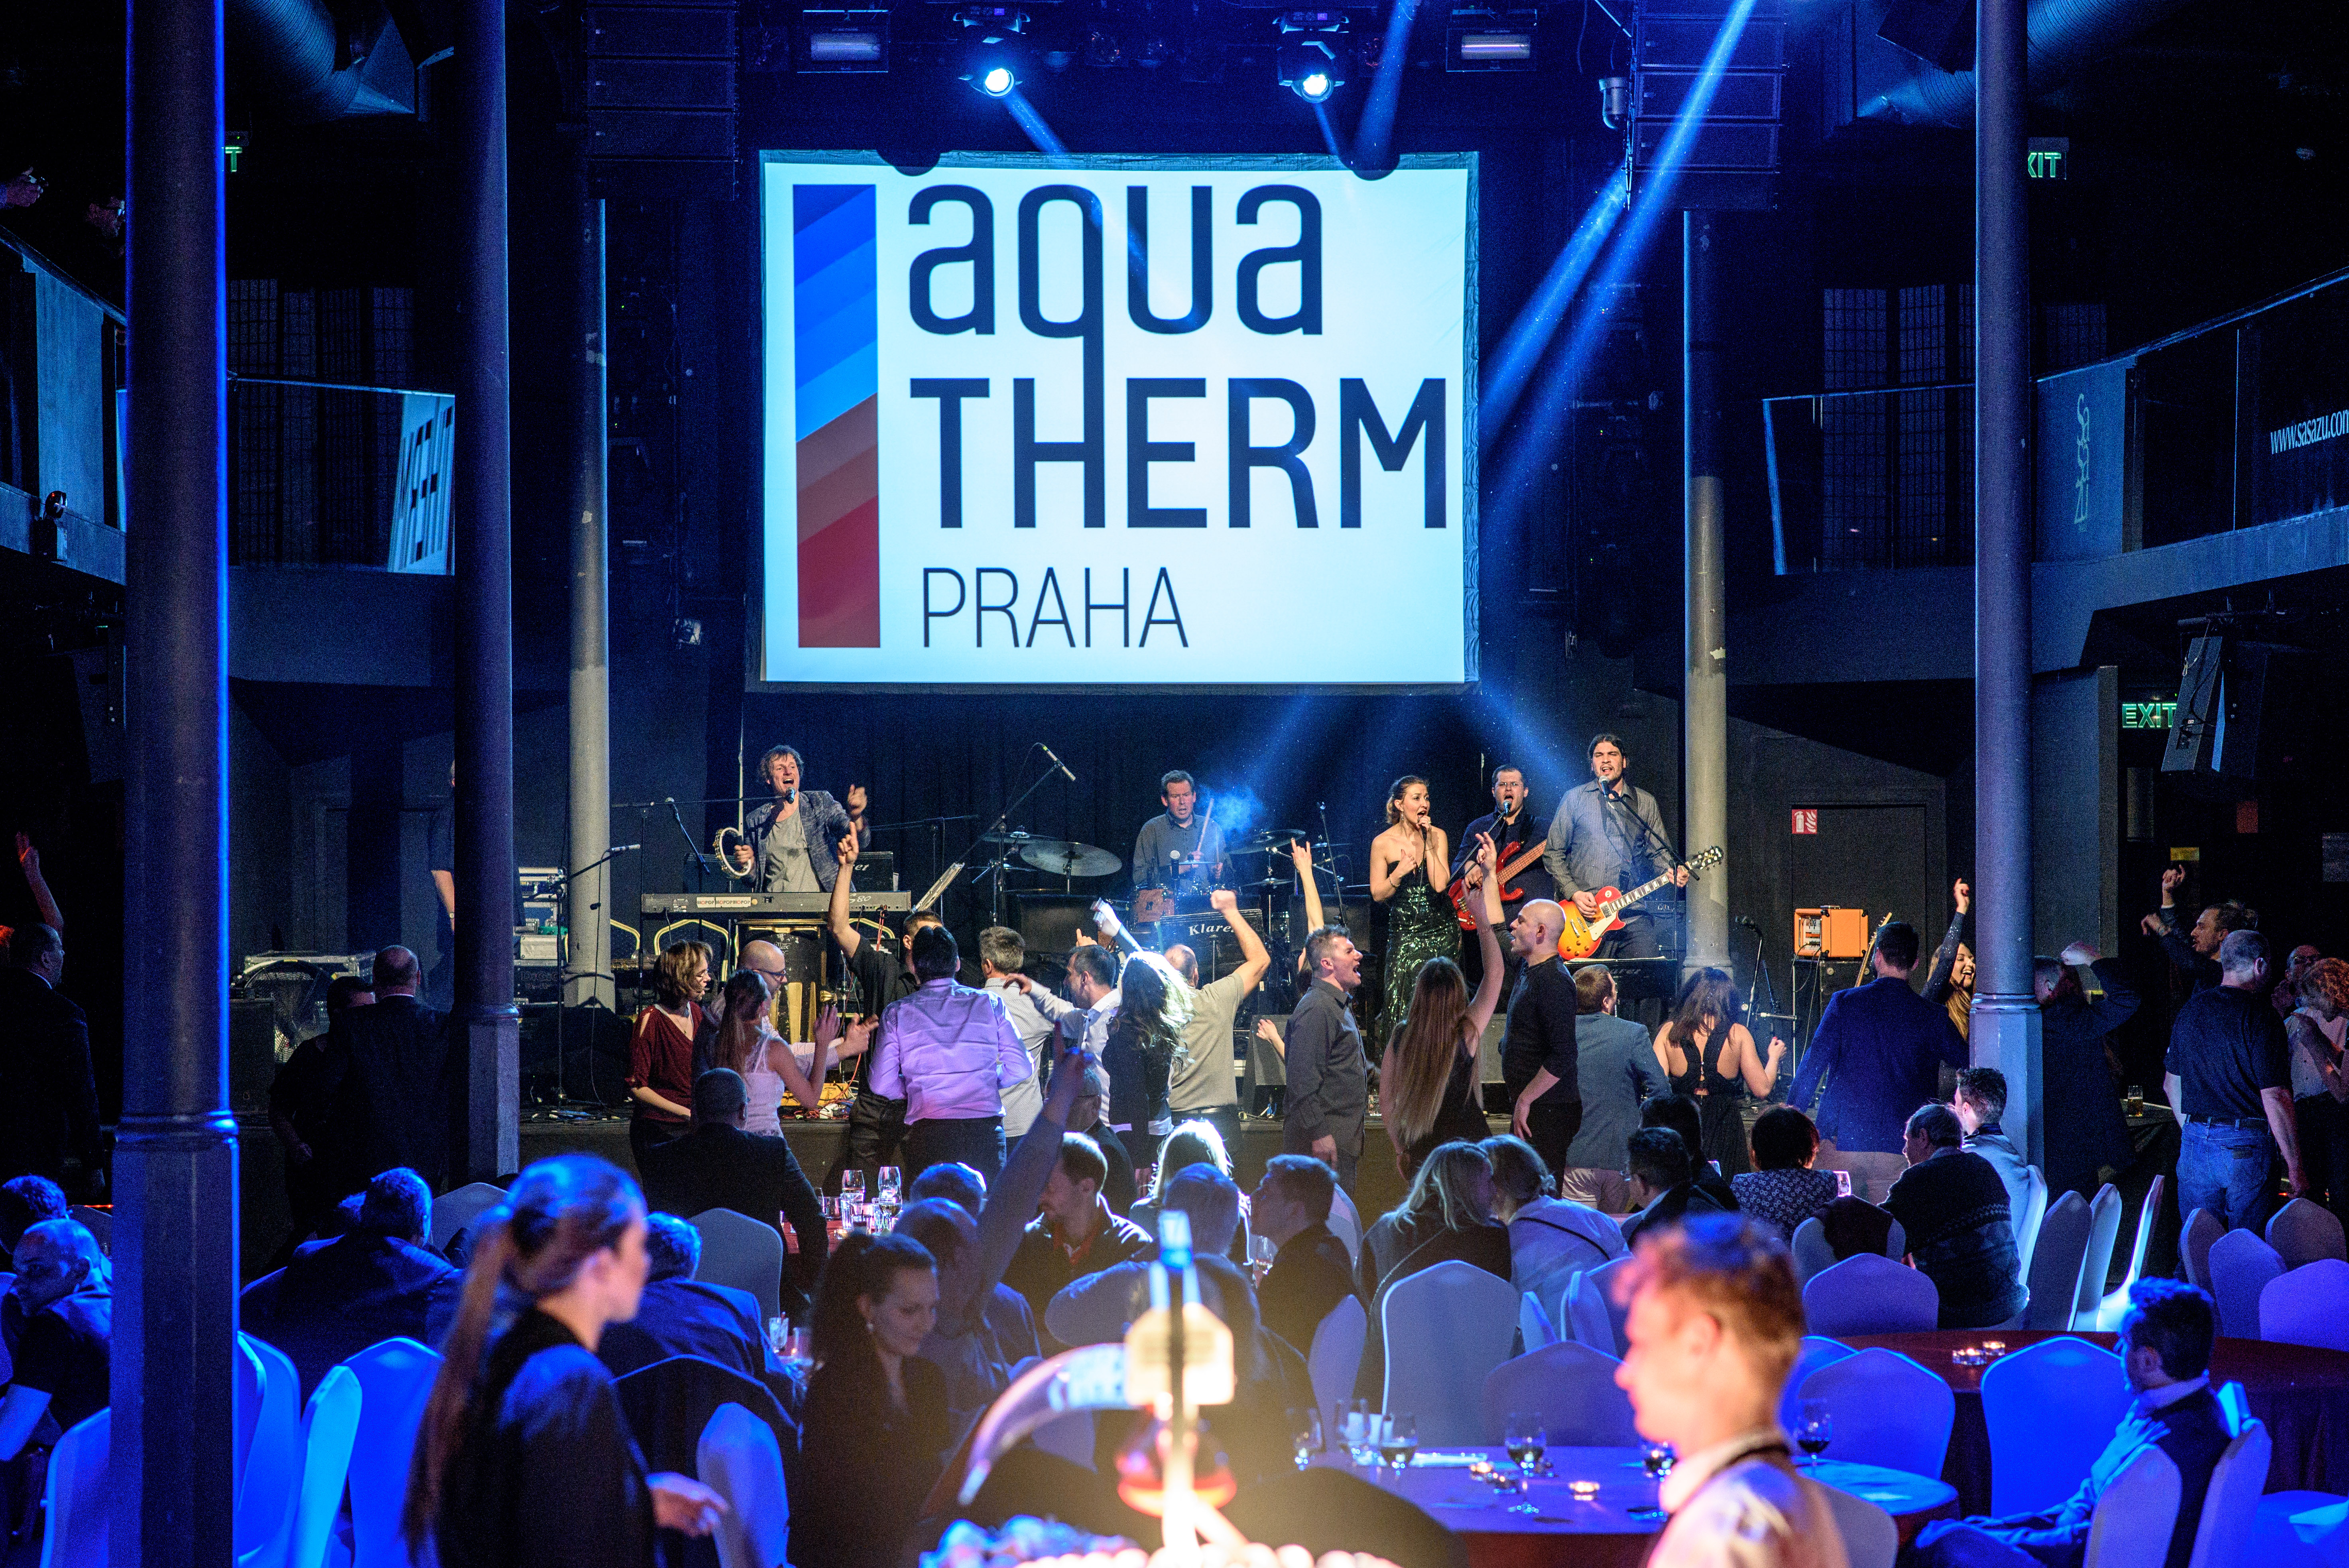 ﻿ Odwiedź KAN na Aquatherm Praga 2020!